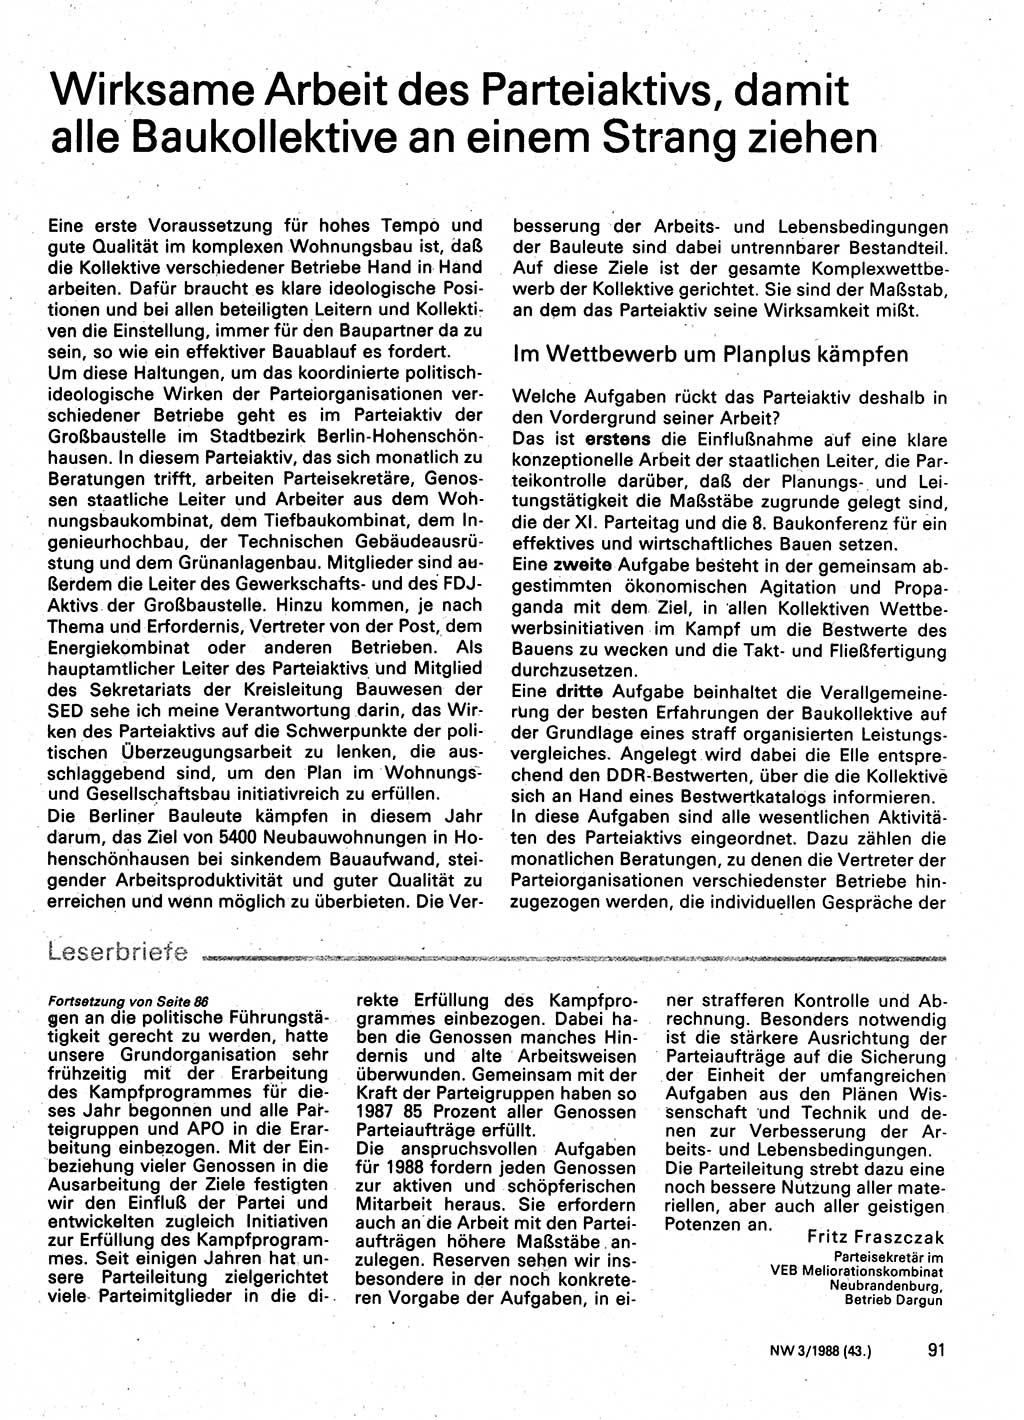 Neuer Weg (NW), Organ des Zentralkomitees (ZK) der SED (Sozialistische Einheitspartei Deutschlands) für Fragen des Parteilebens, 43. Jahrgang [Deutsche Demokratische Republik (DDR)] 1988, Seite 91 (NW ZK SED DDR 1988, S. 91)